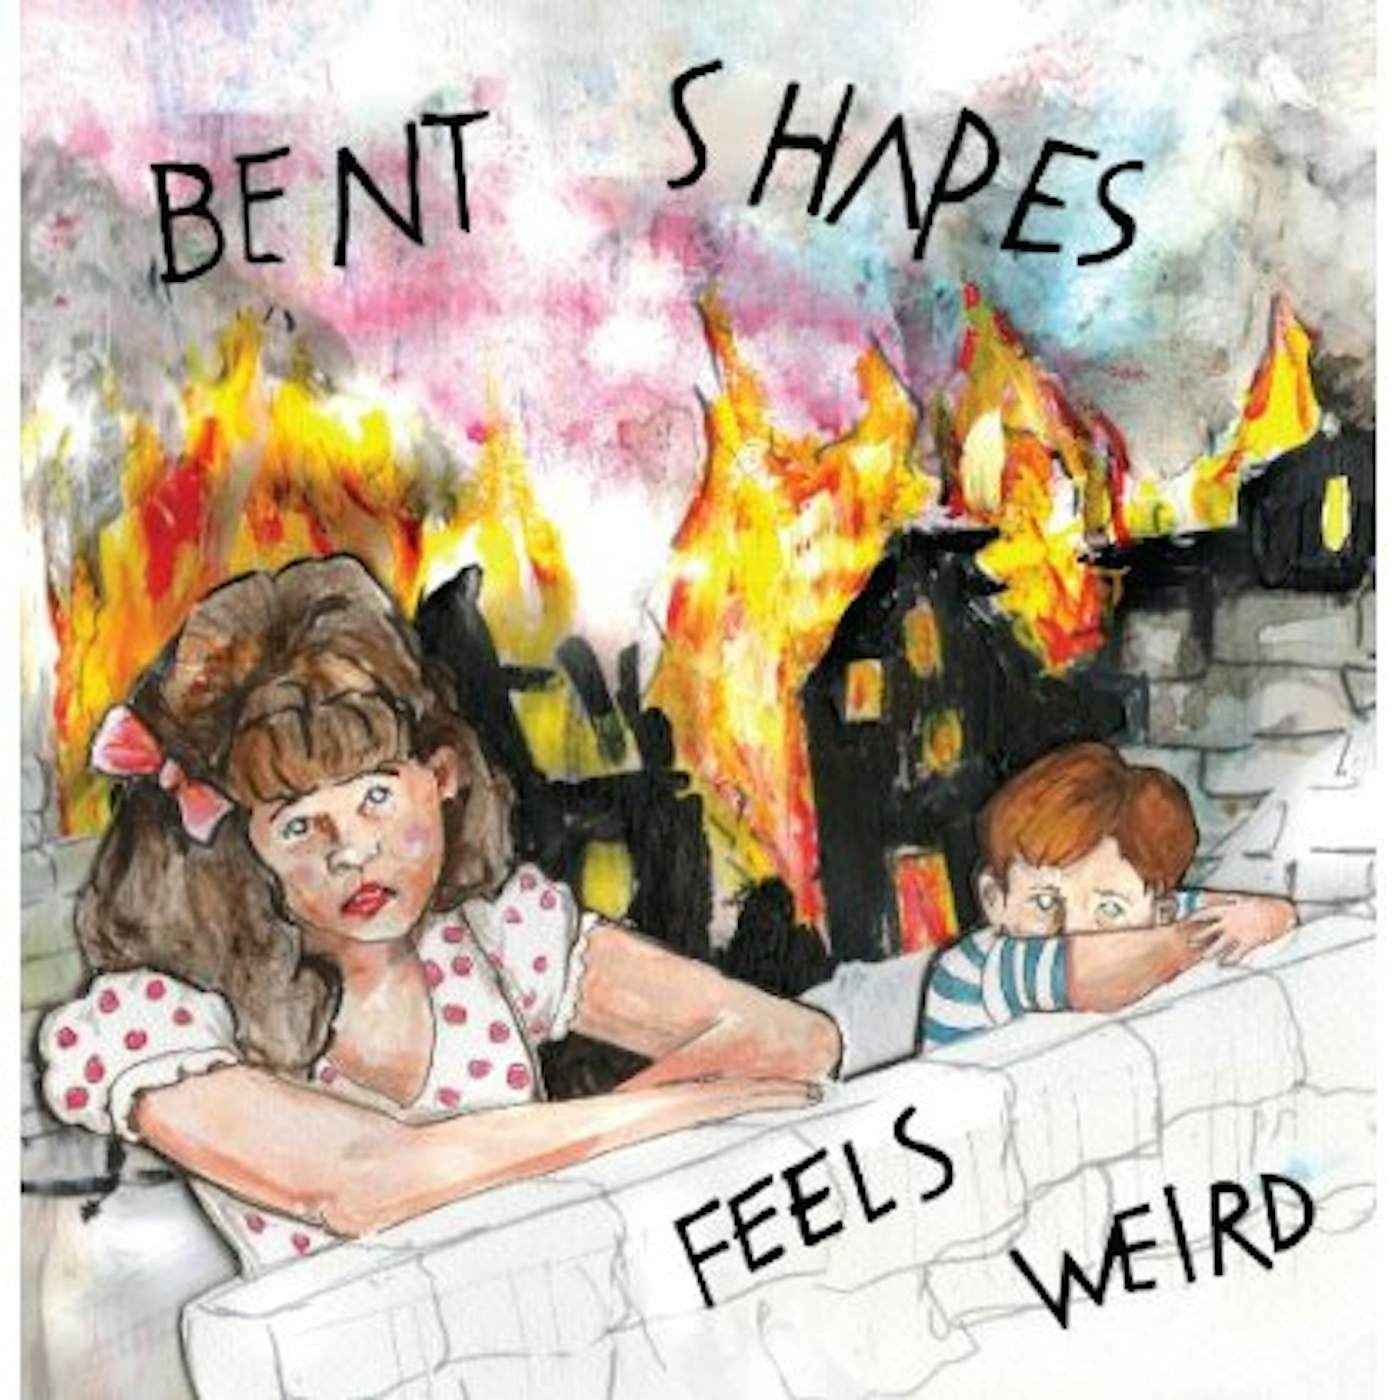 Bent Shapes FEELS WEIRD CD